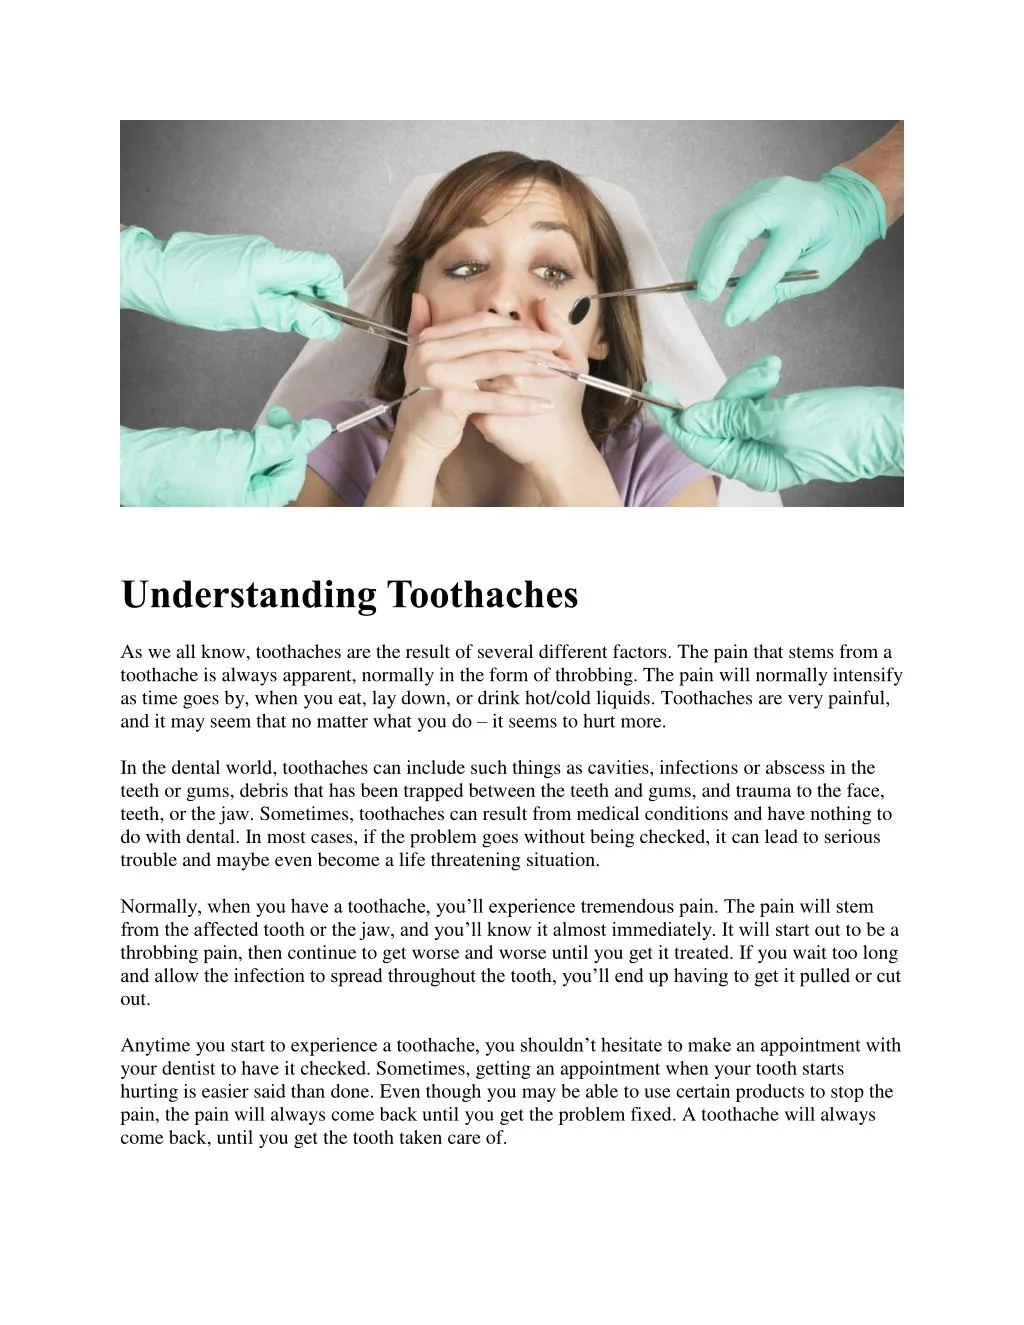 understanding toothaches